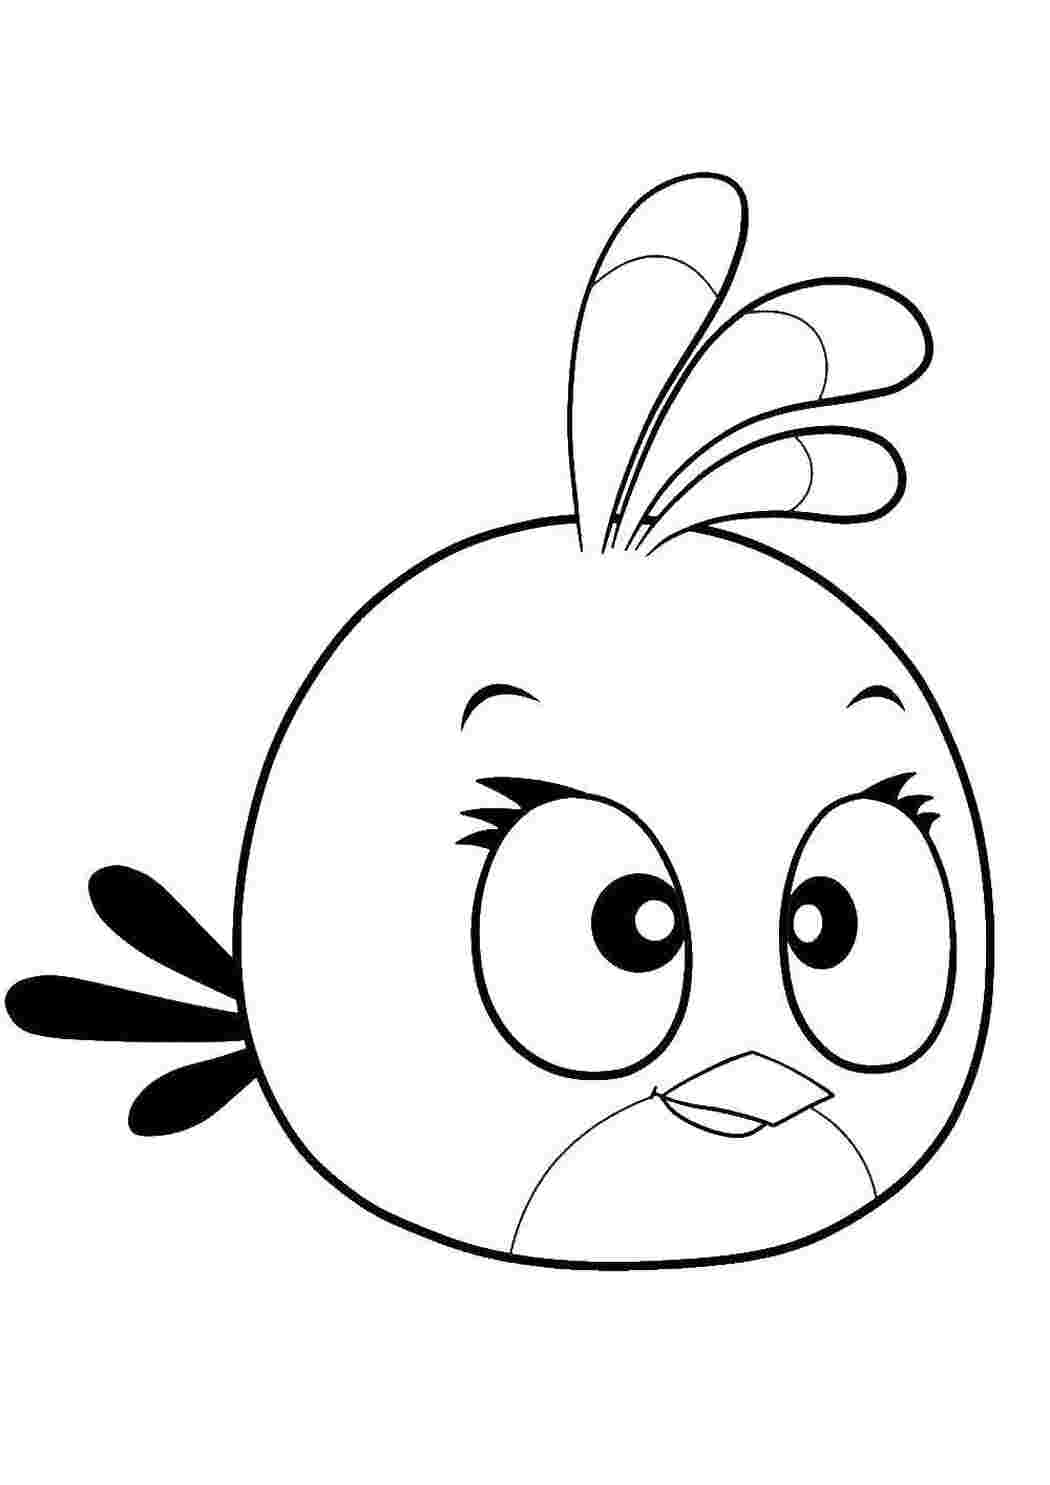 Раскраски Птичка из angry birds  angry birds Игры, Angry Birds 